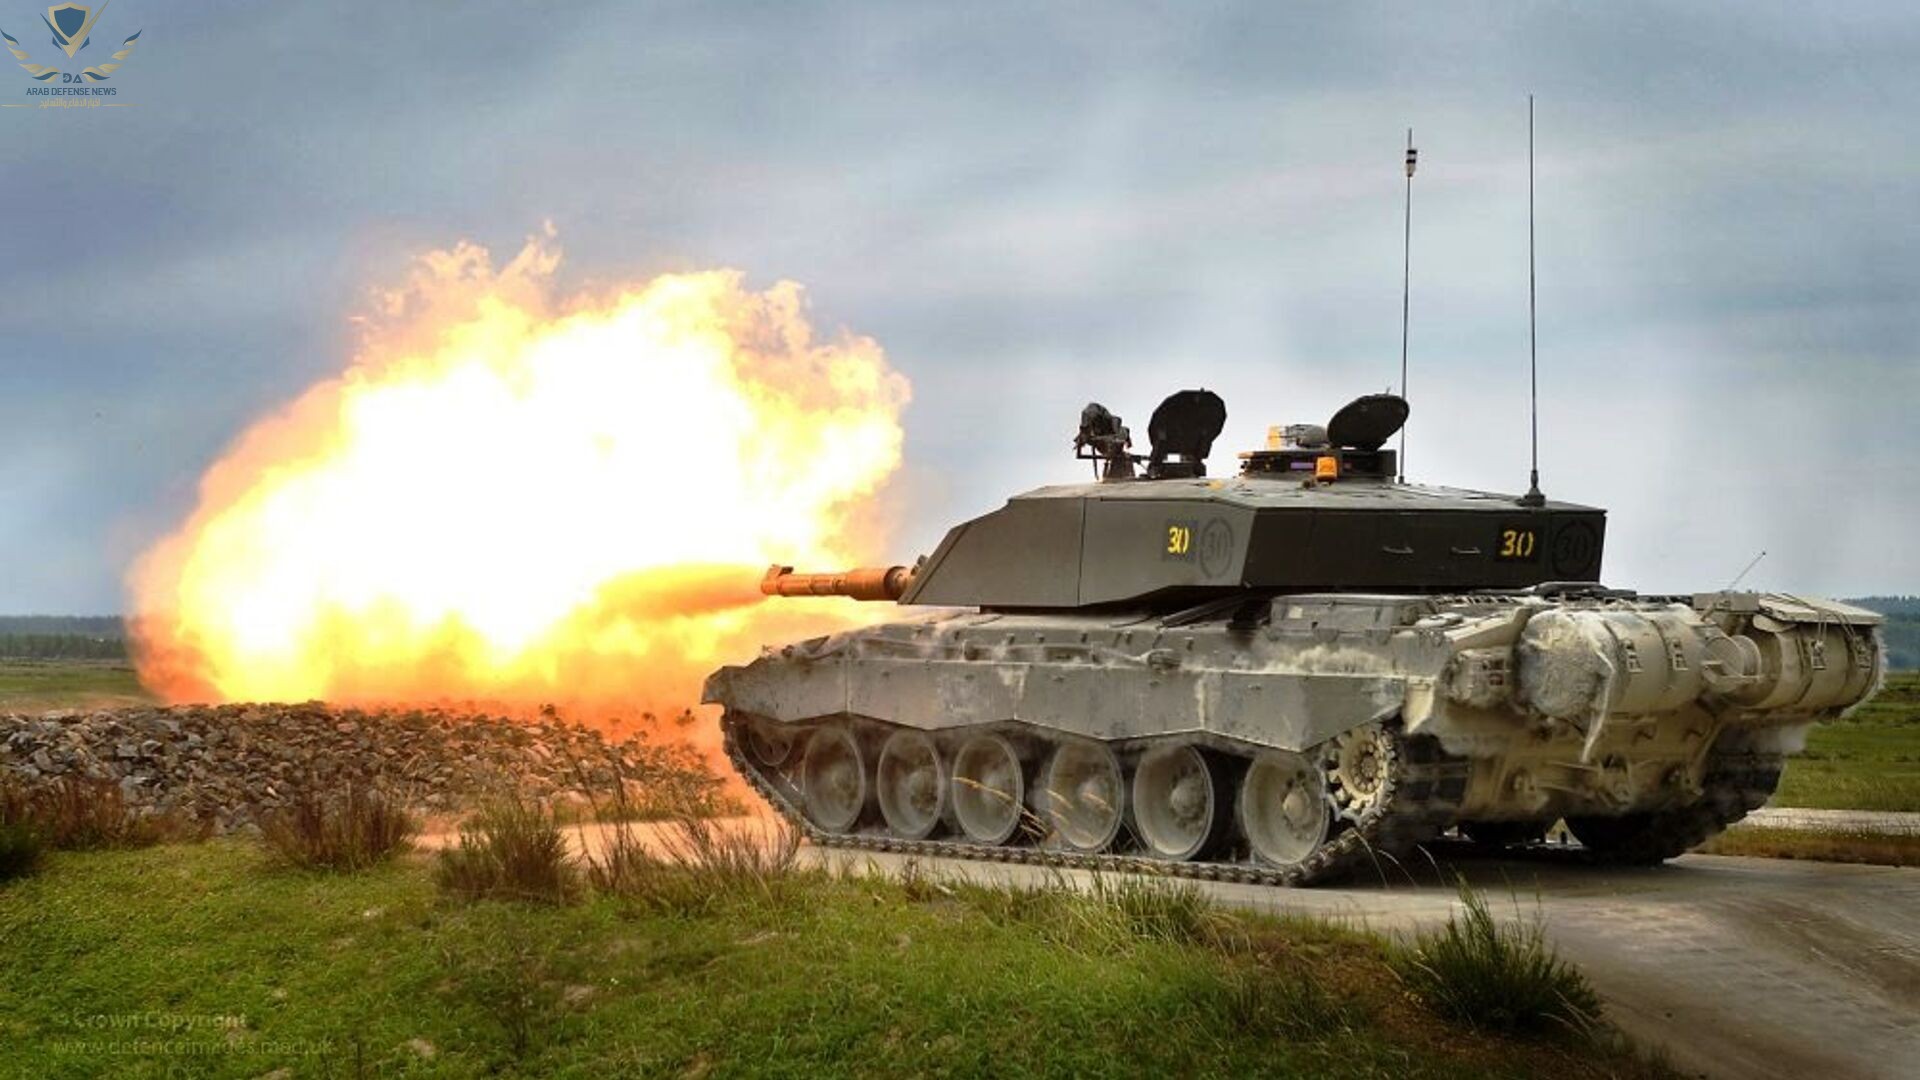 المملكة المتحدة تؤكد تسليم مدافع هاوتزر إضافية من طراز AS90 ومركبات إلى أوكرانيا